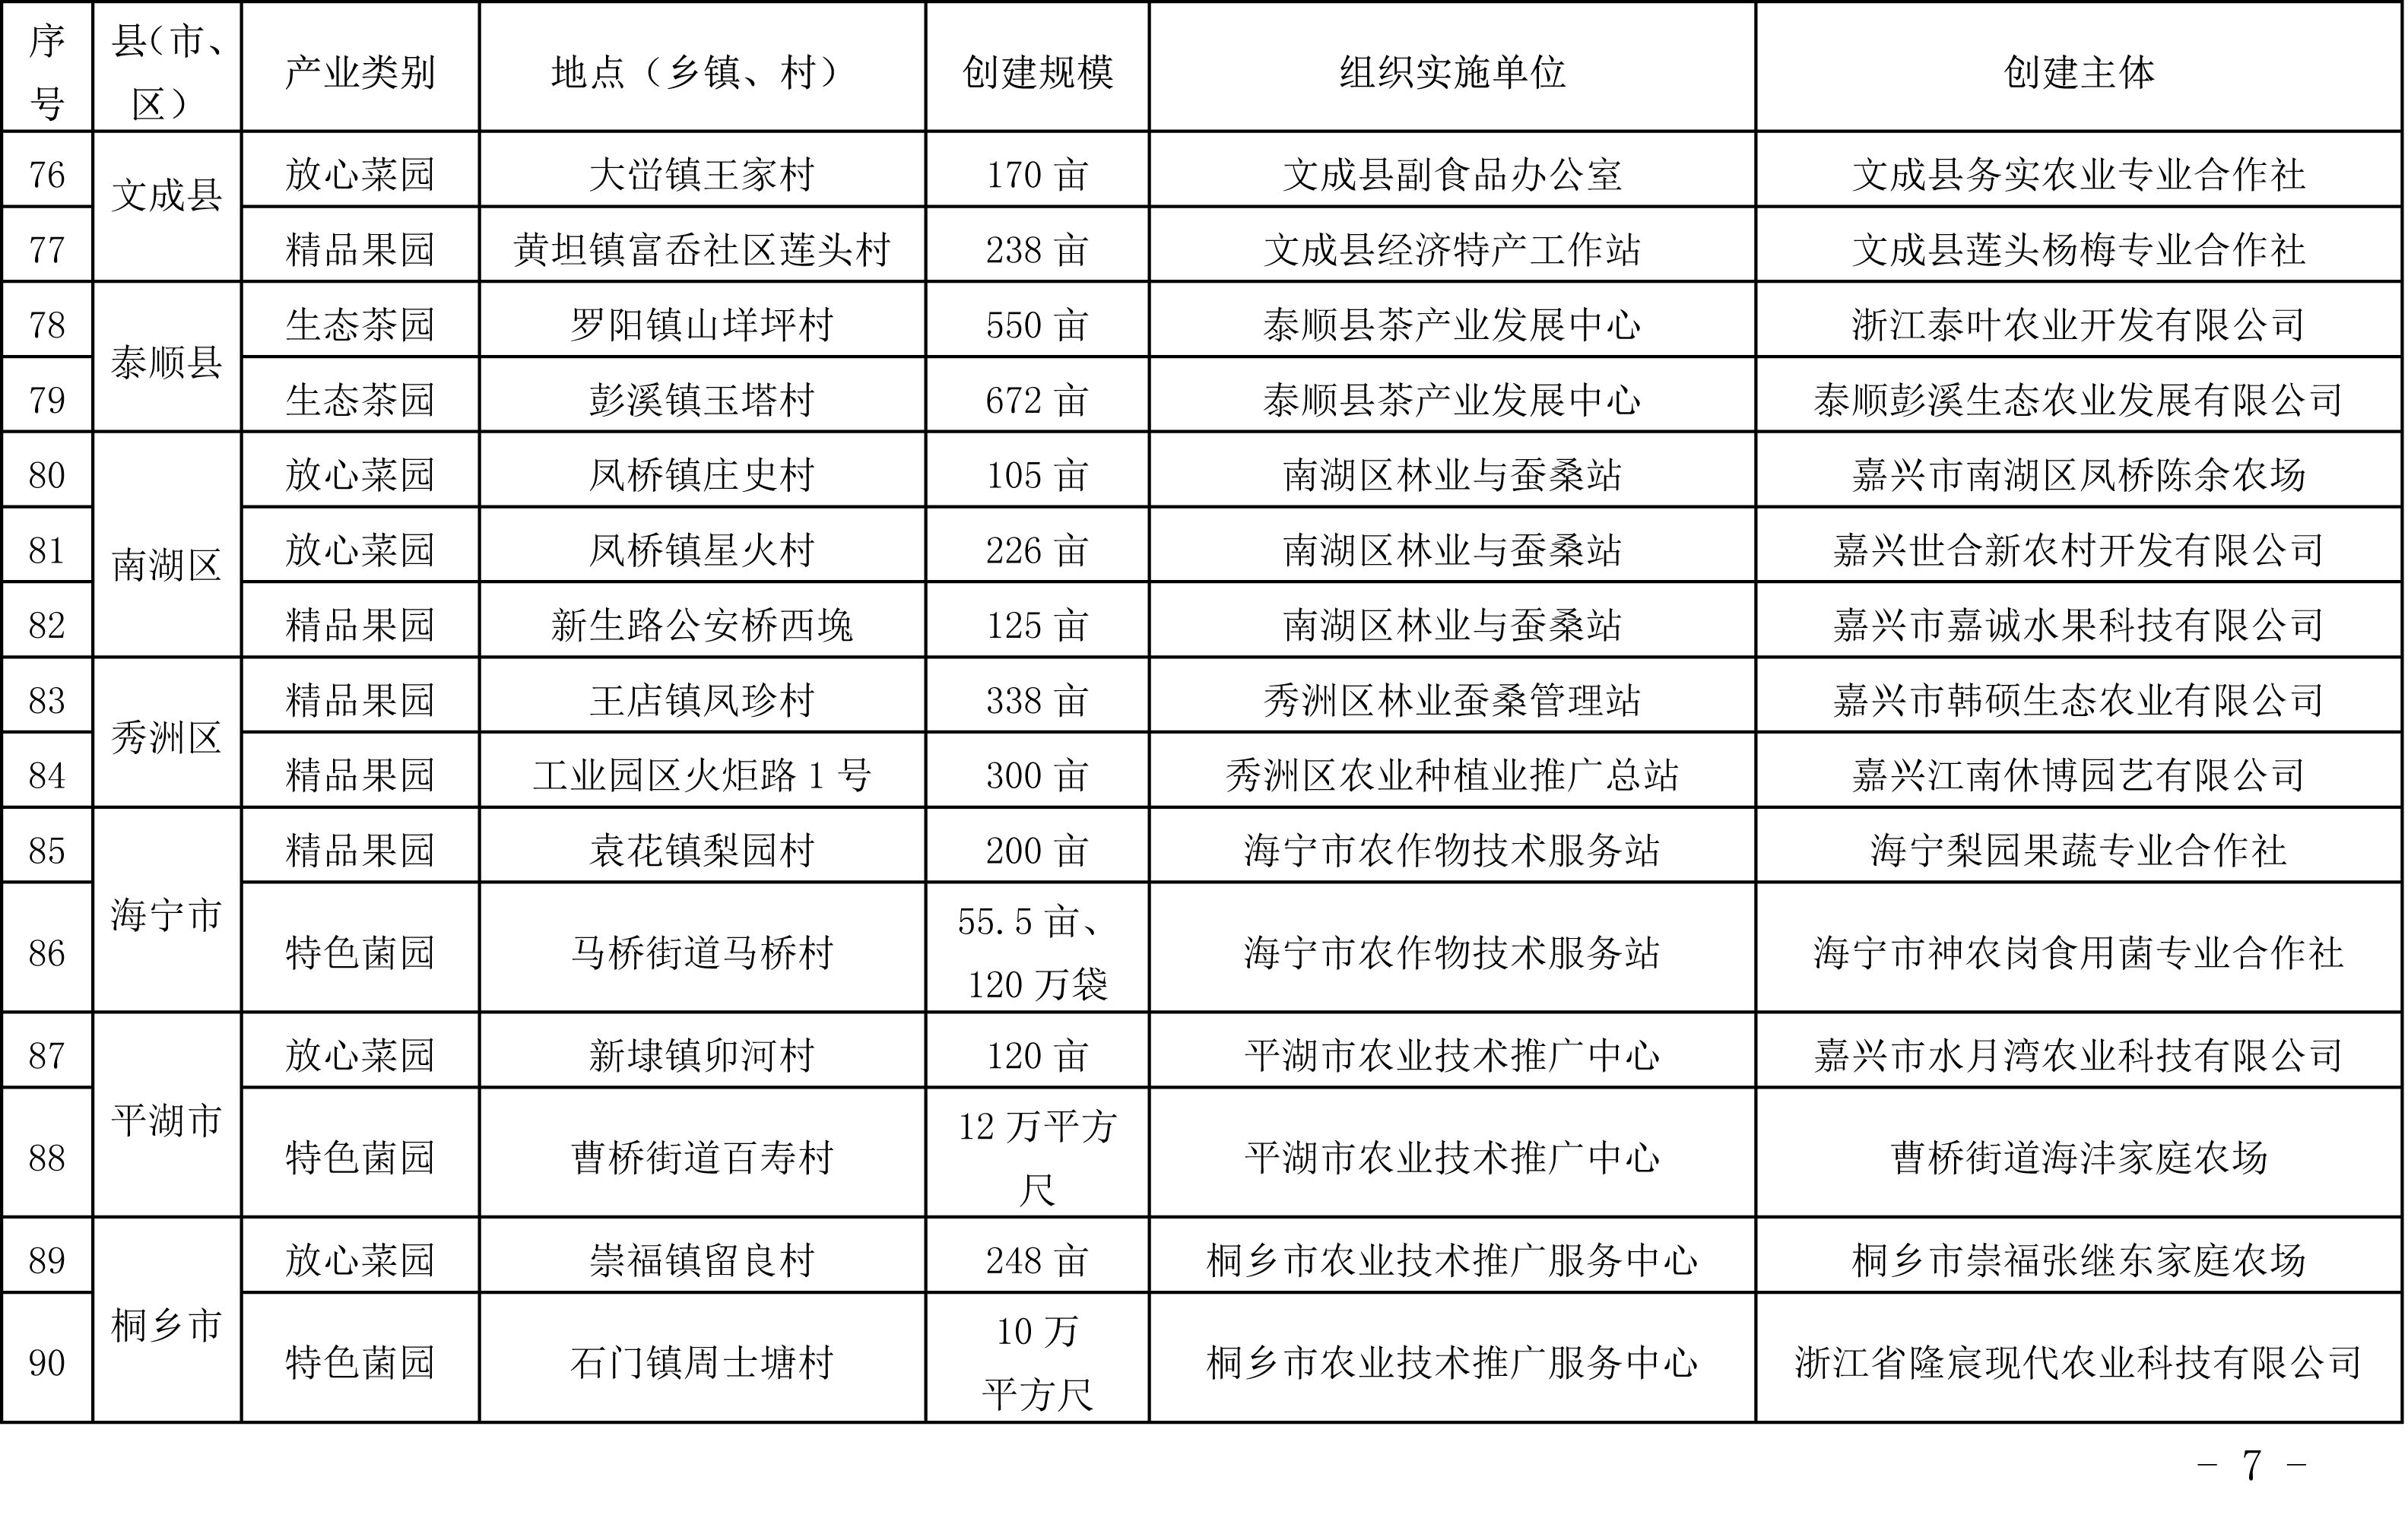 浙江省农业农村厅关于公布2019年度种植业“五园”创建省级示范基地名单的通知(图7)